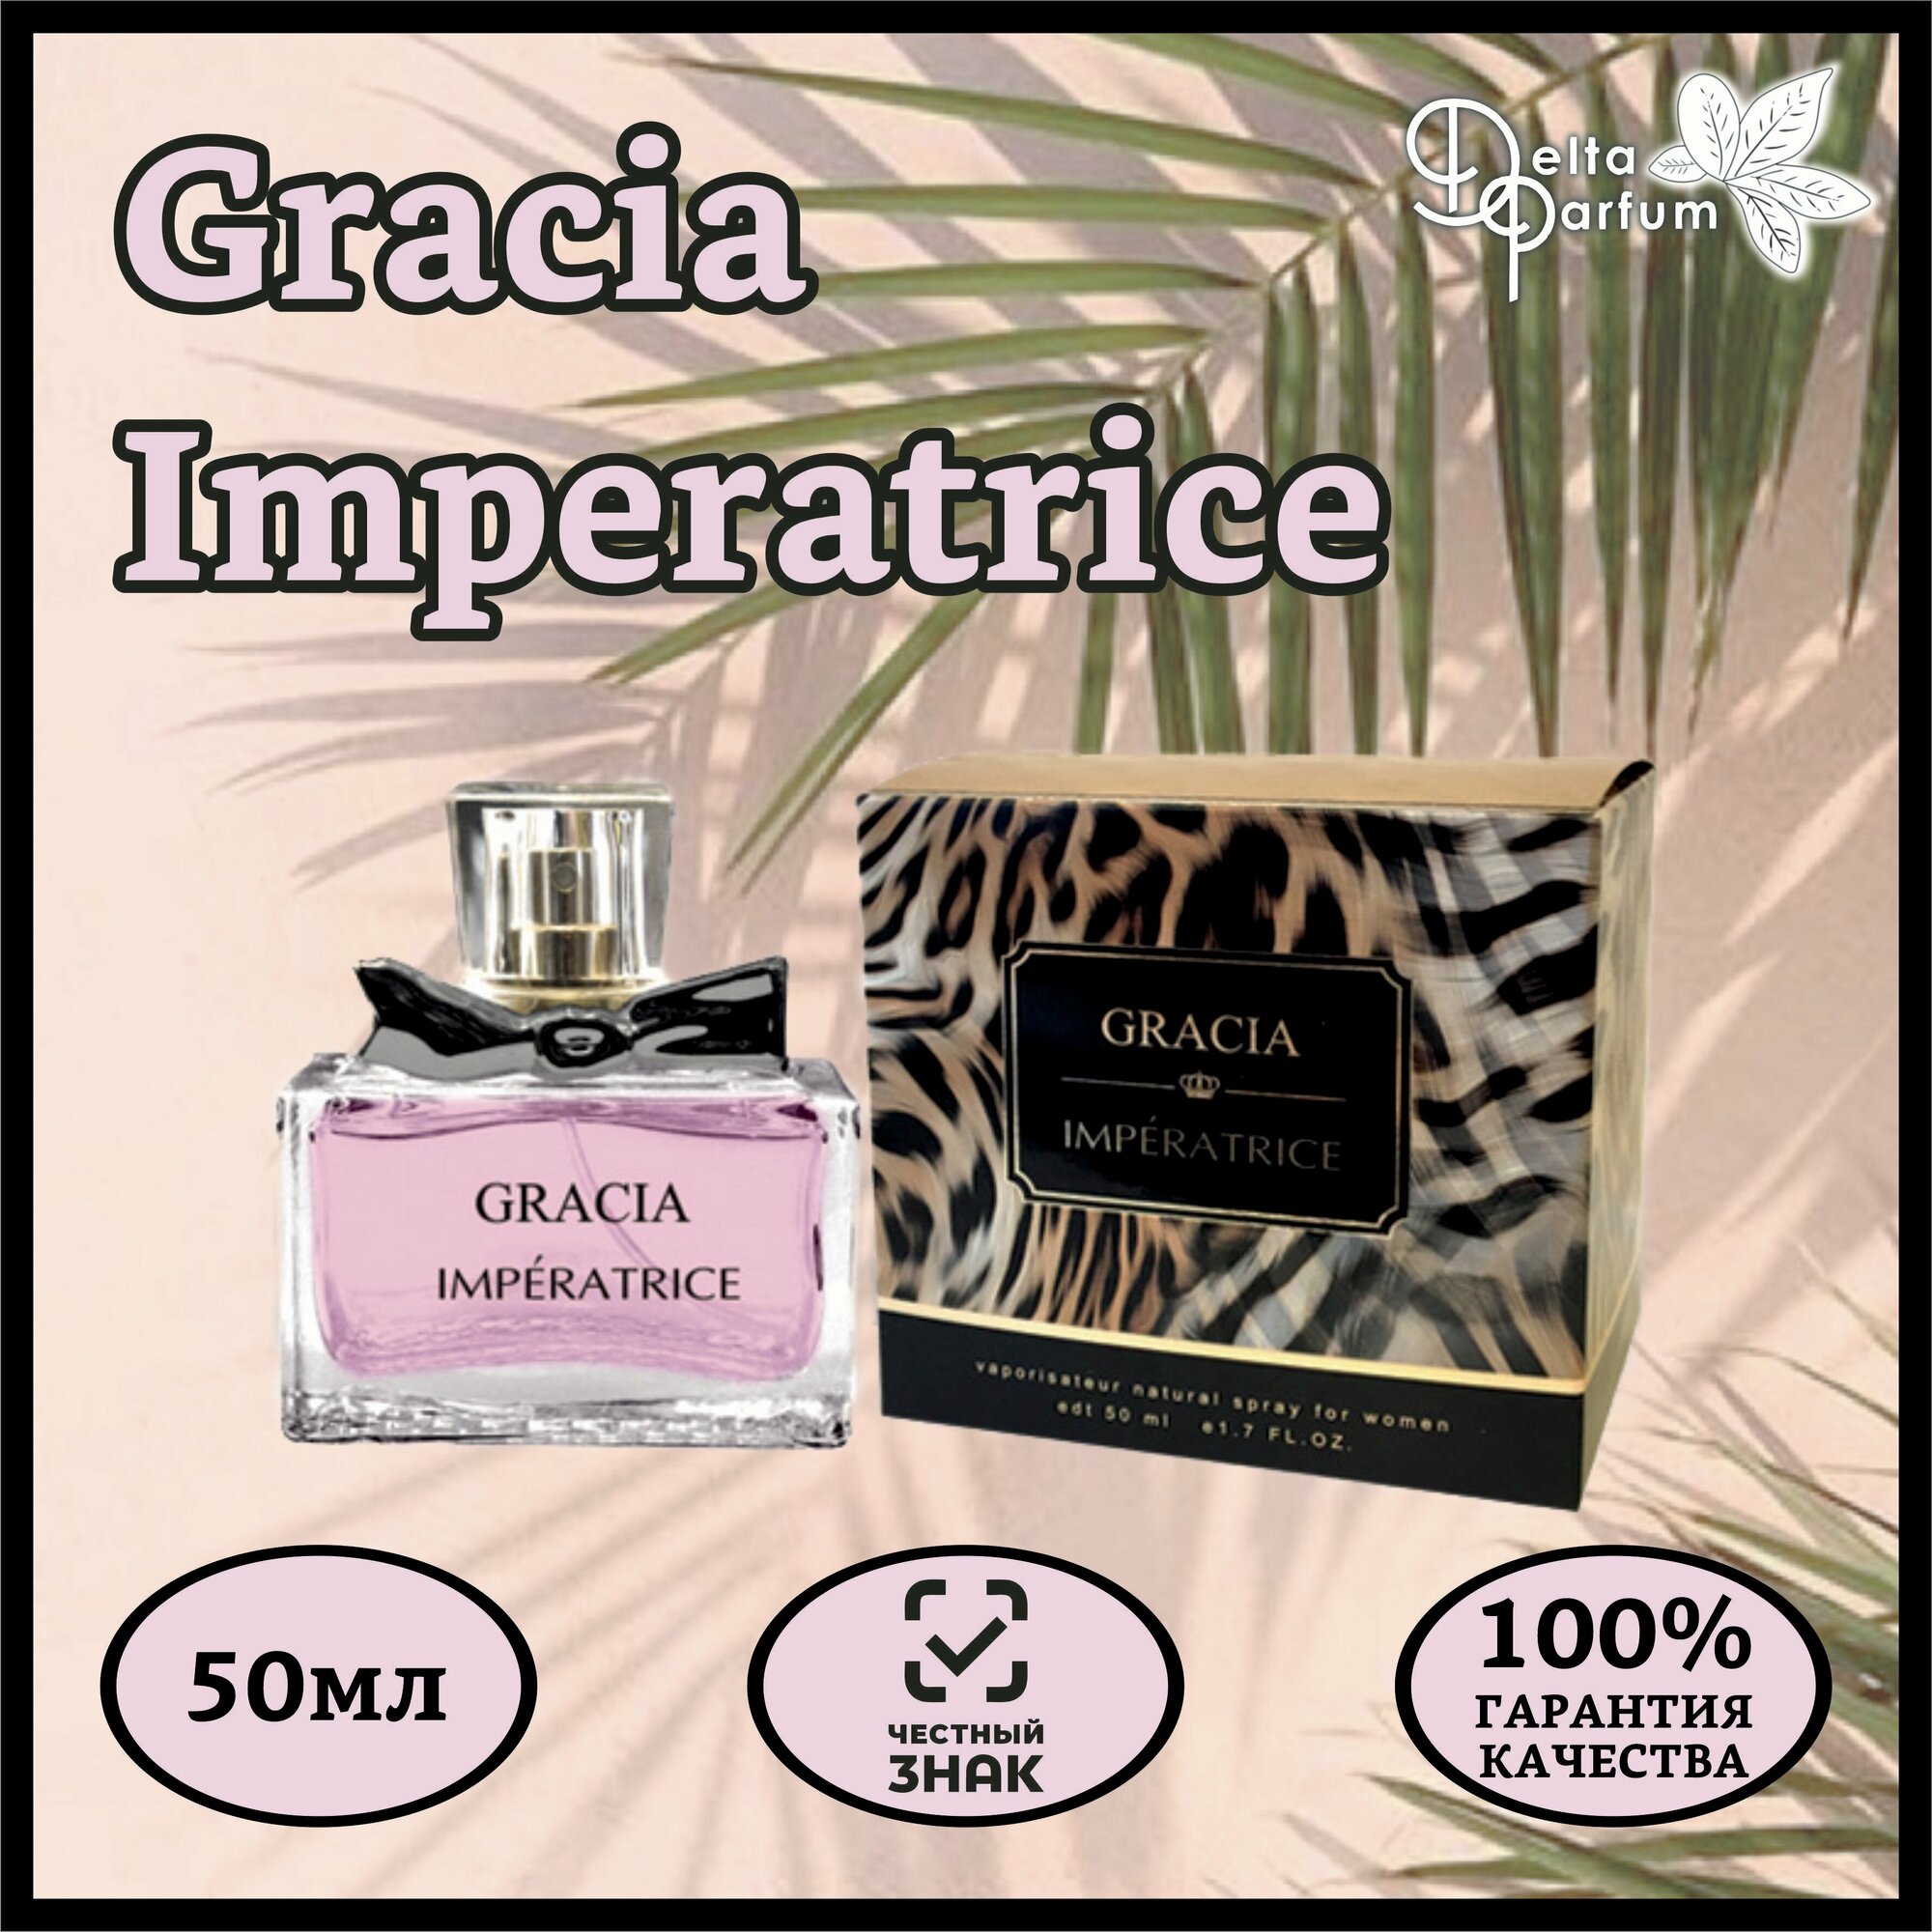 Delta parfum Туалетная вода женская Gracia Imperatrice